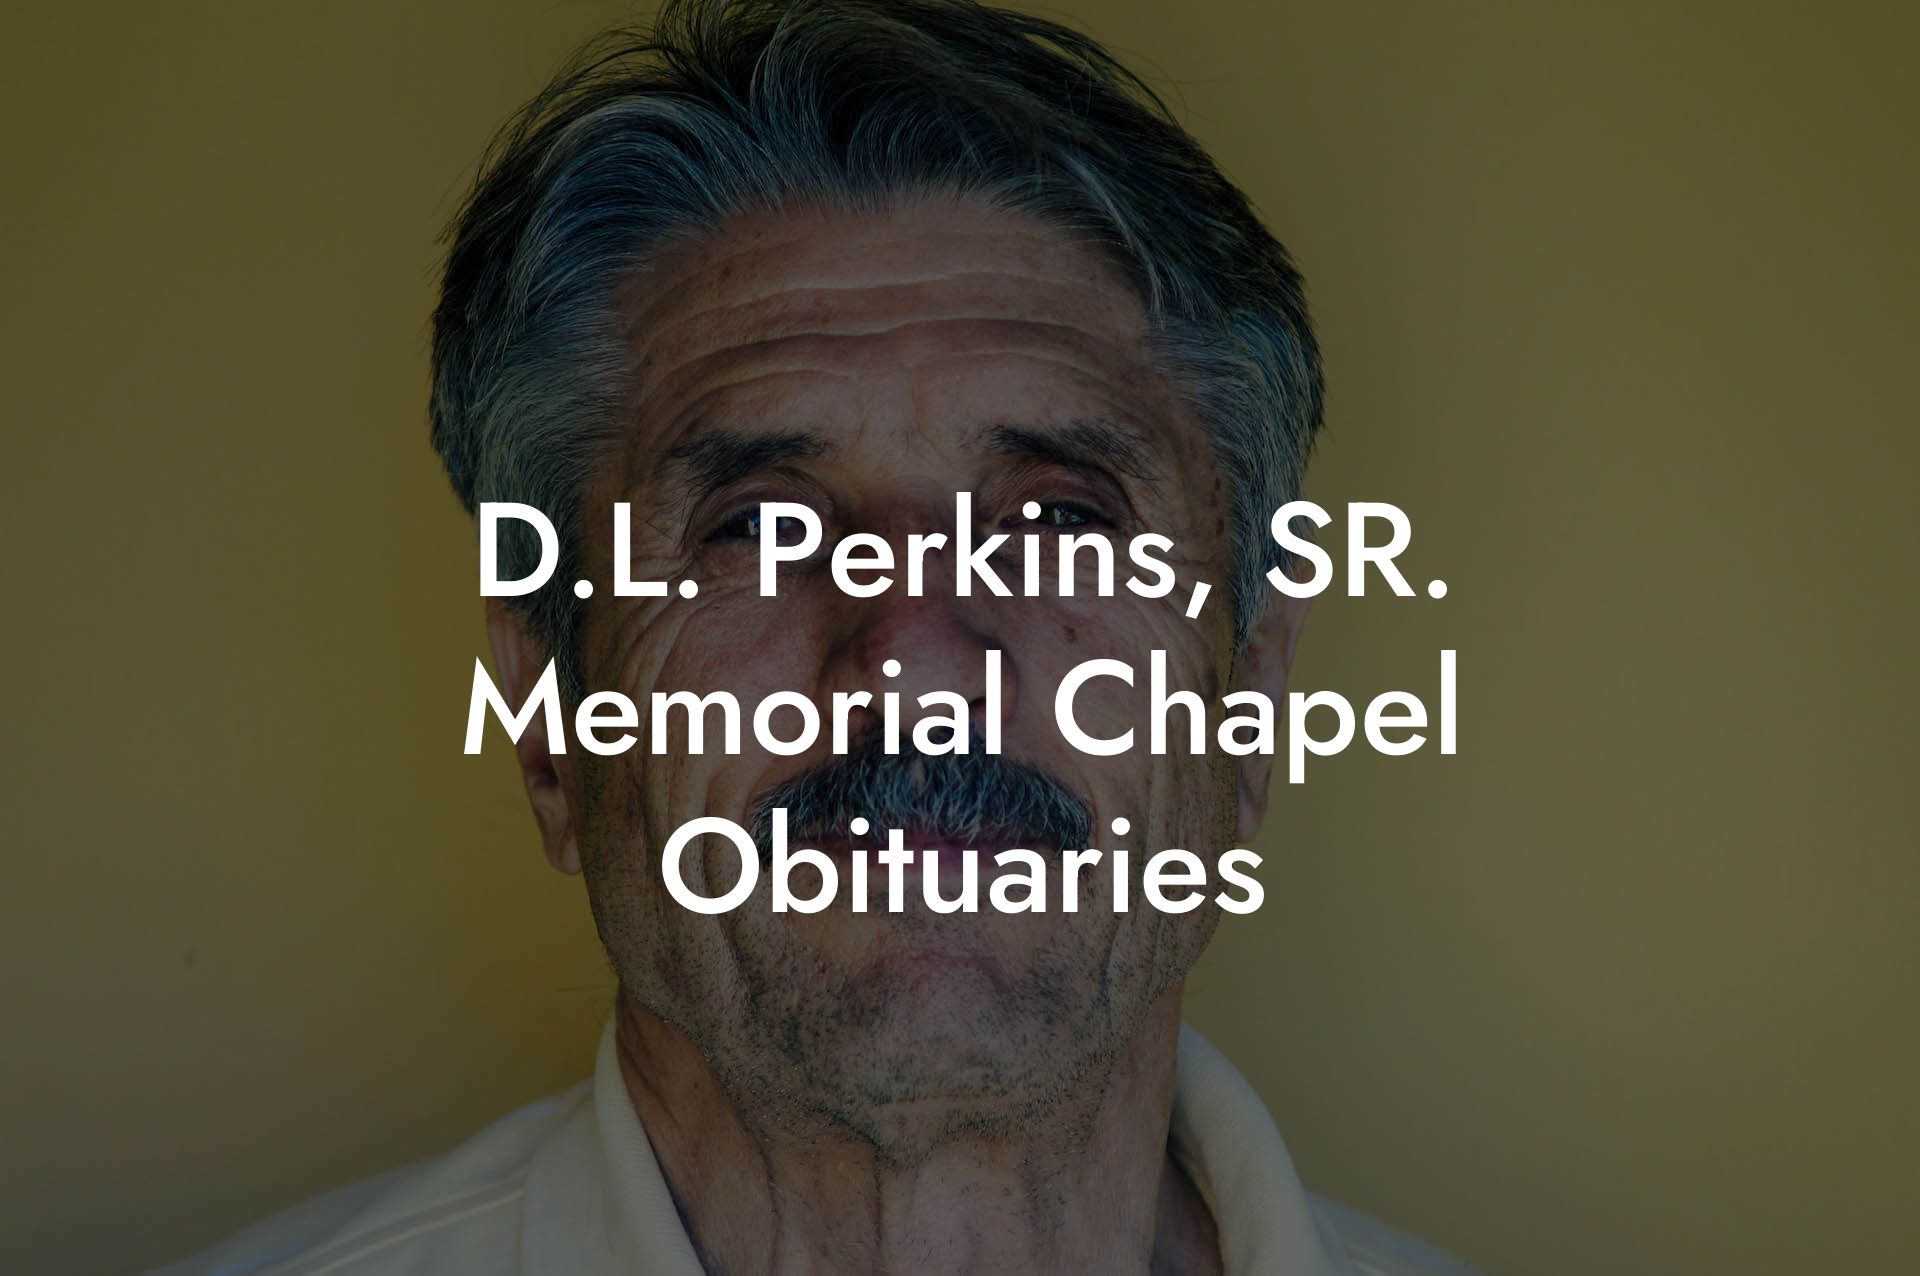 D.L. Perkins, SR. Memorial Chapel Obituaries